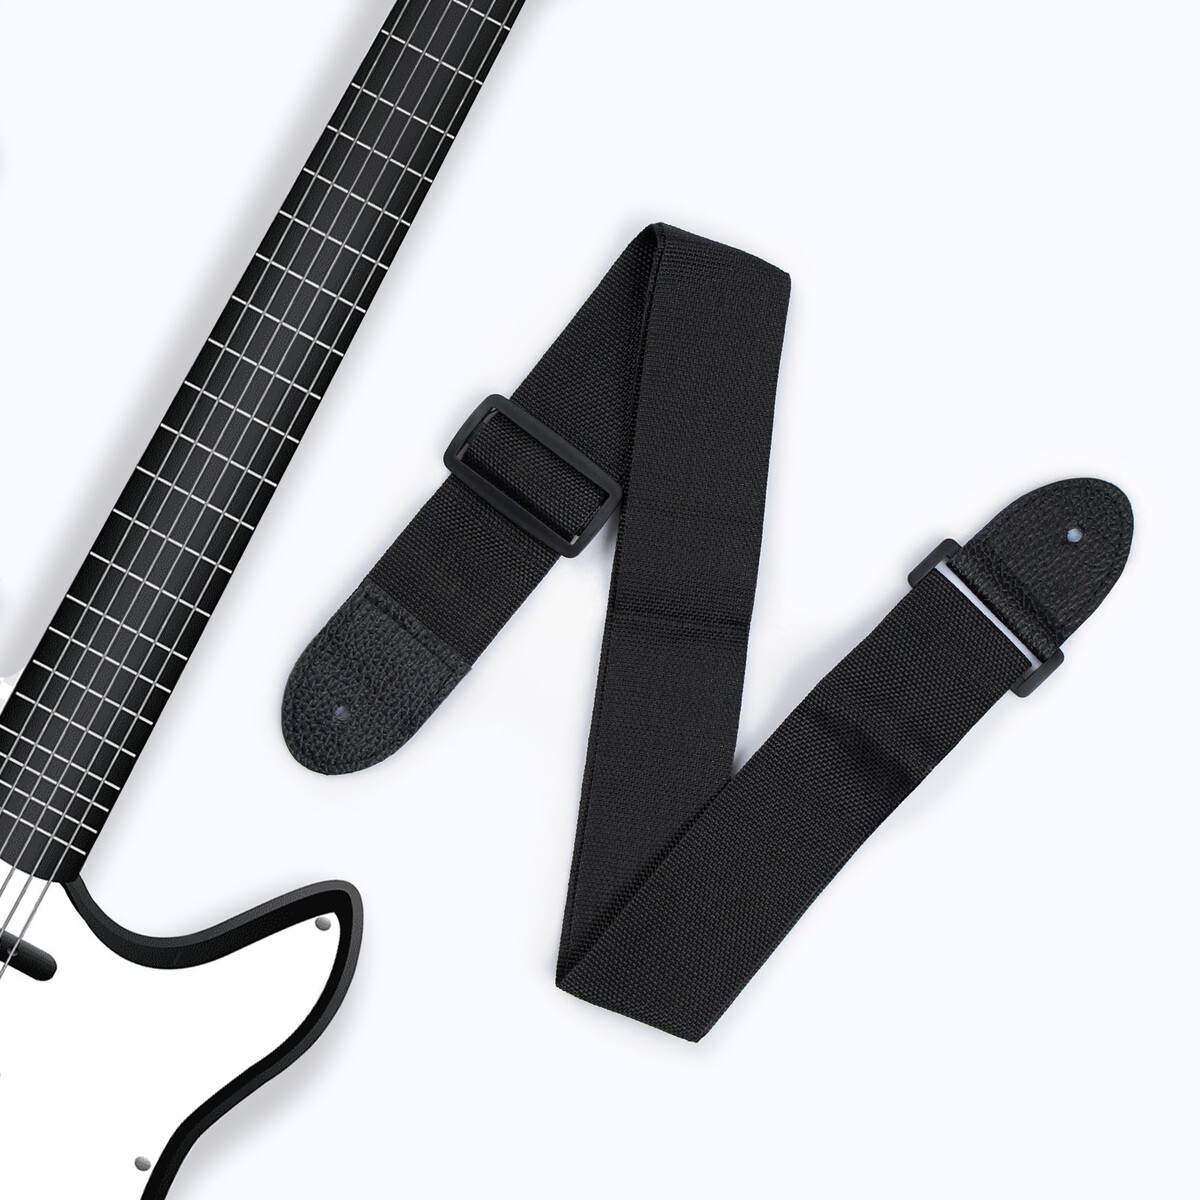 Ремень для гитары, черный, длина 60-110 см, ширина 5 см ремень для акустической гитары под два держателя